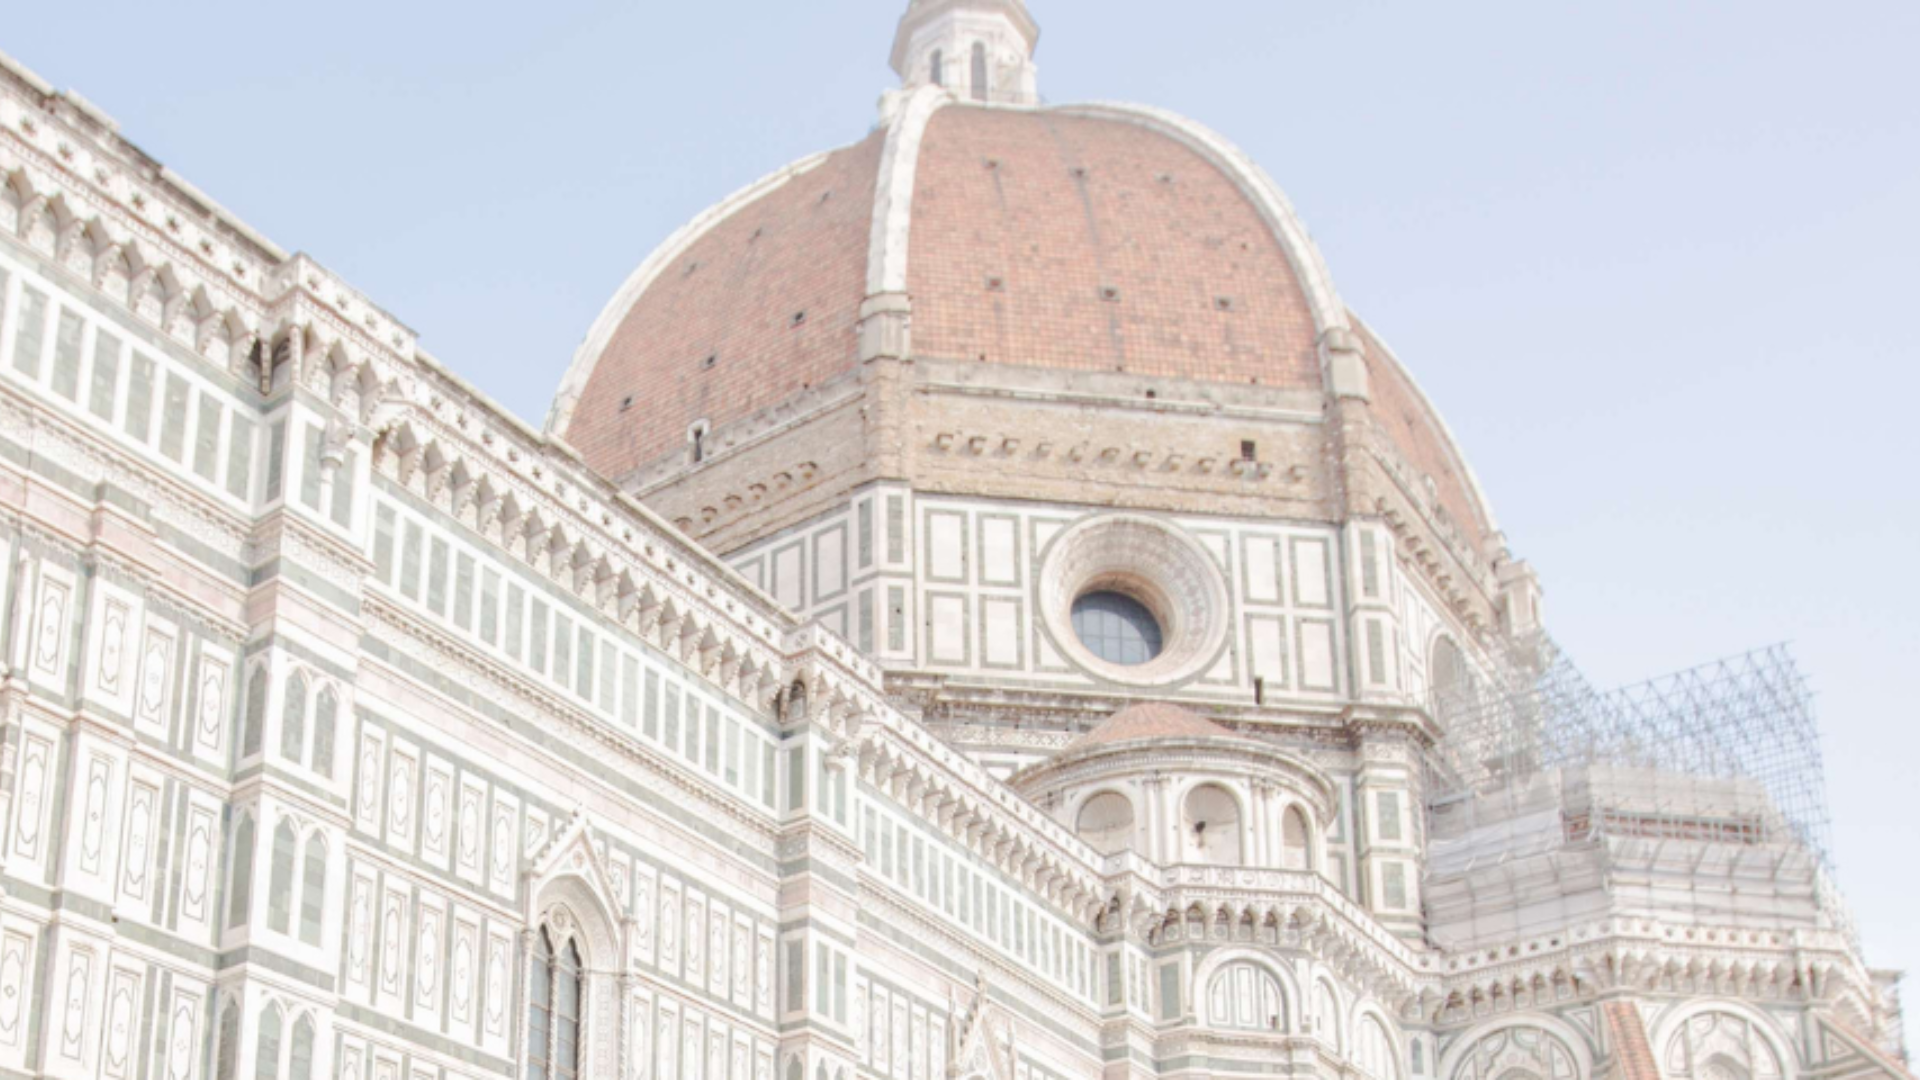 Tour guidato al complesso religioso di Firenze: Battistero e Museo del Duomo con possibilità di visita del Duomo e del Campanile di Giotto.